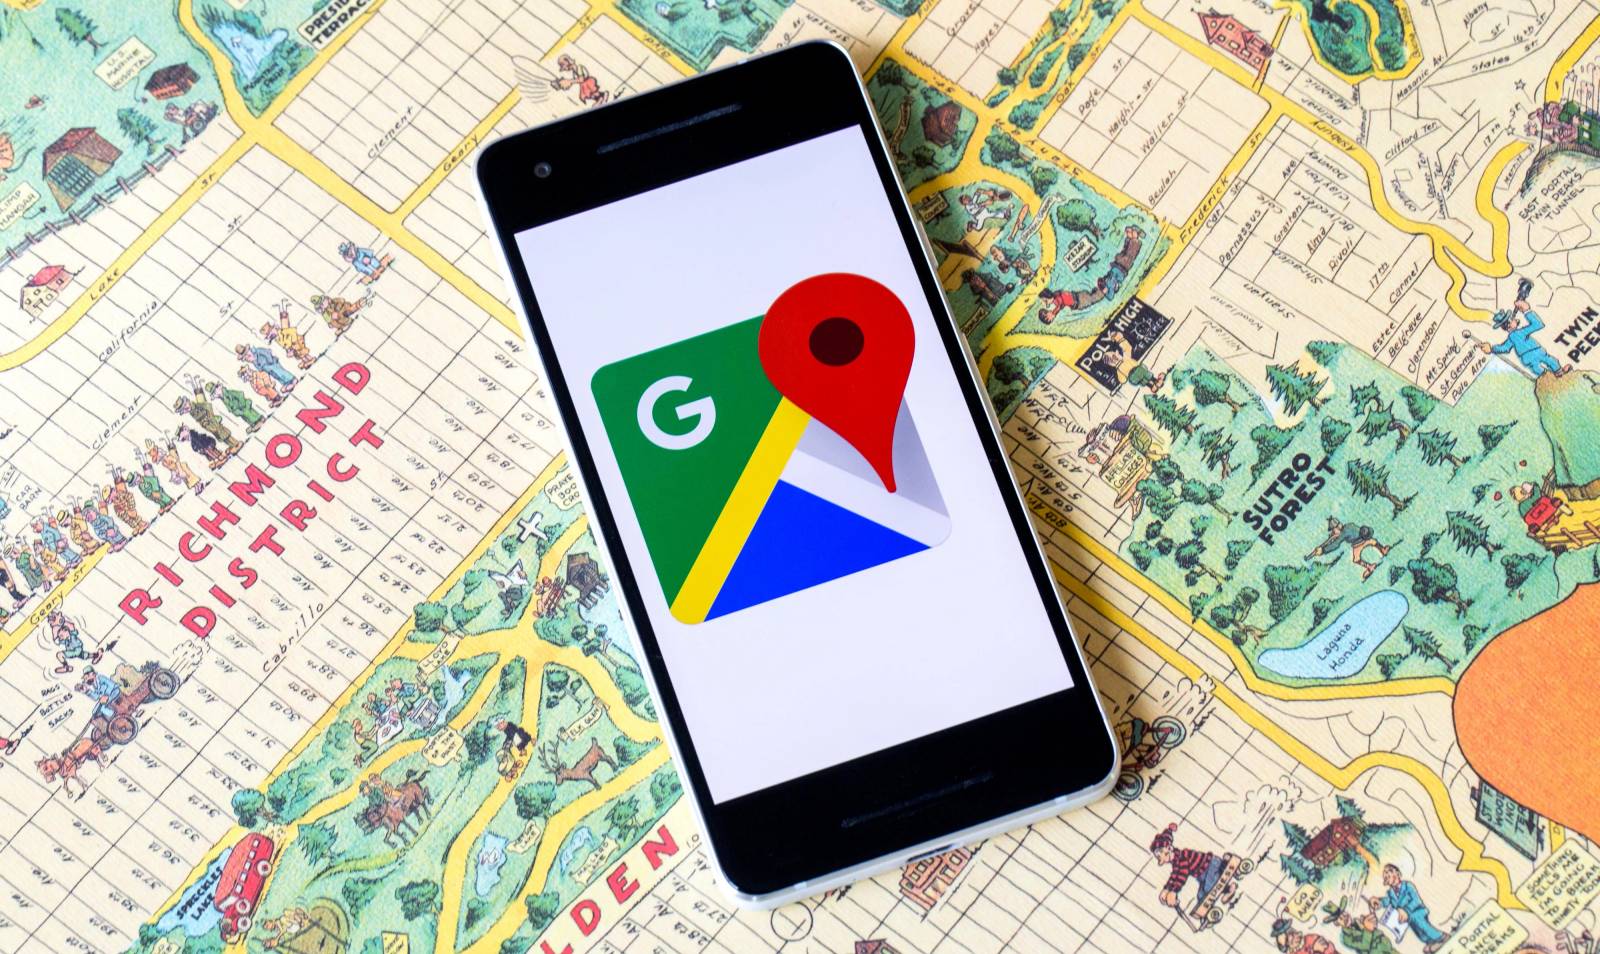 Compartir ubicación de Google Maps